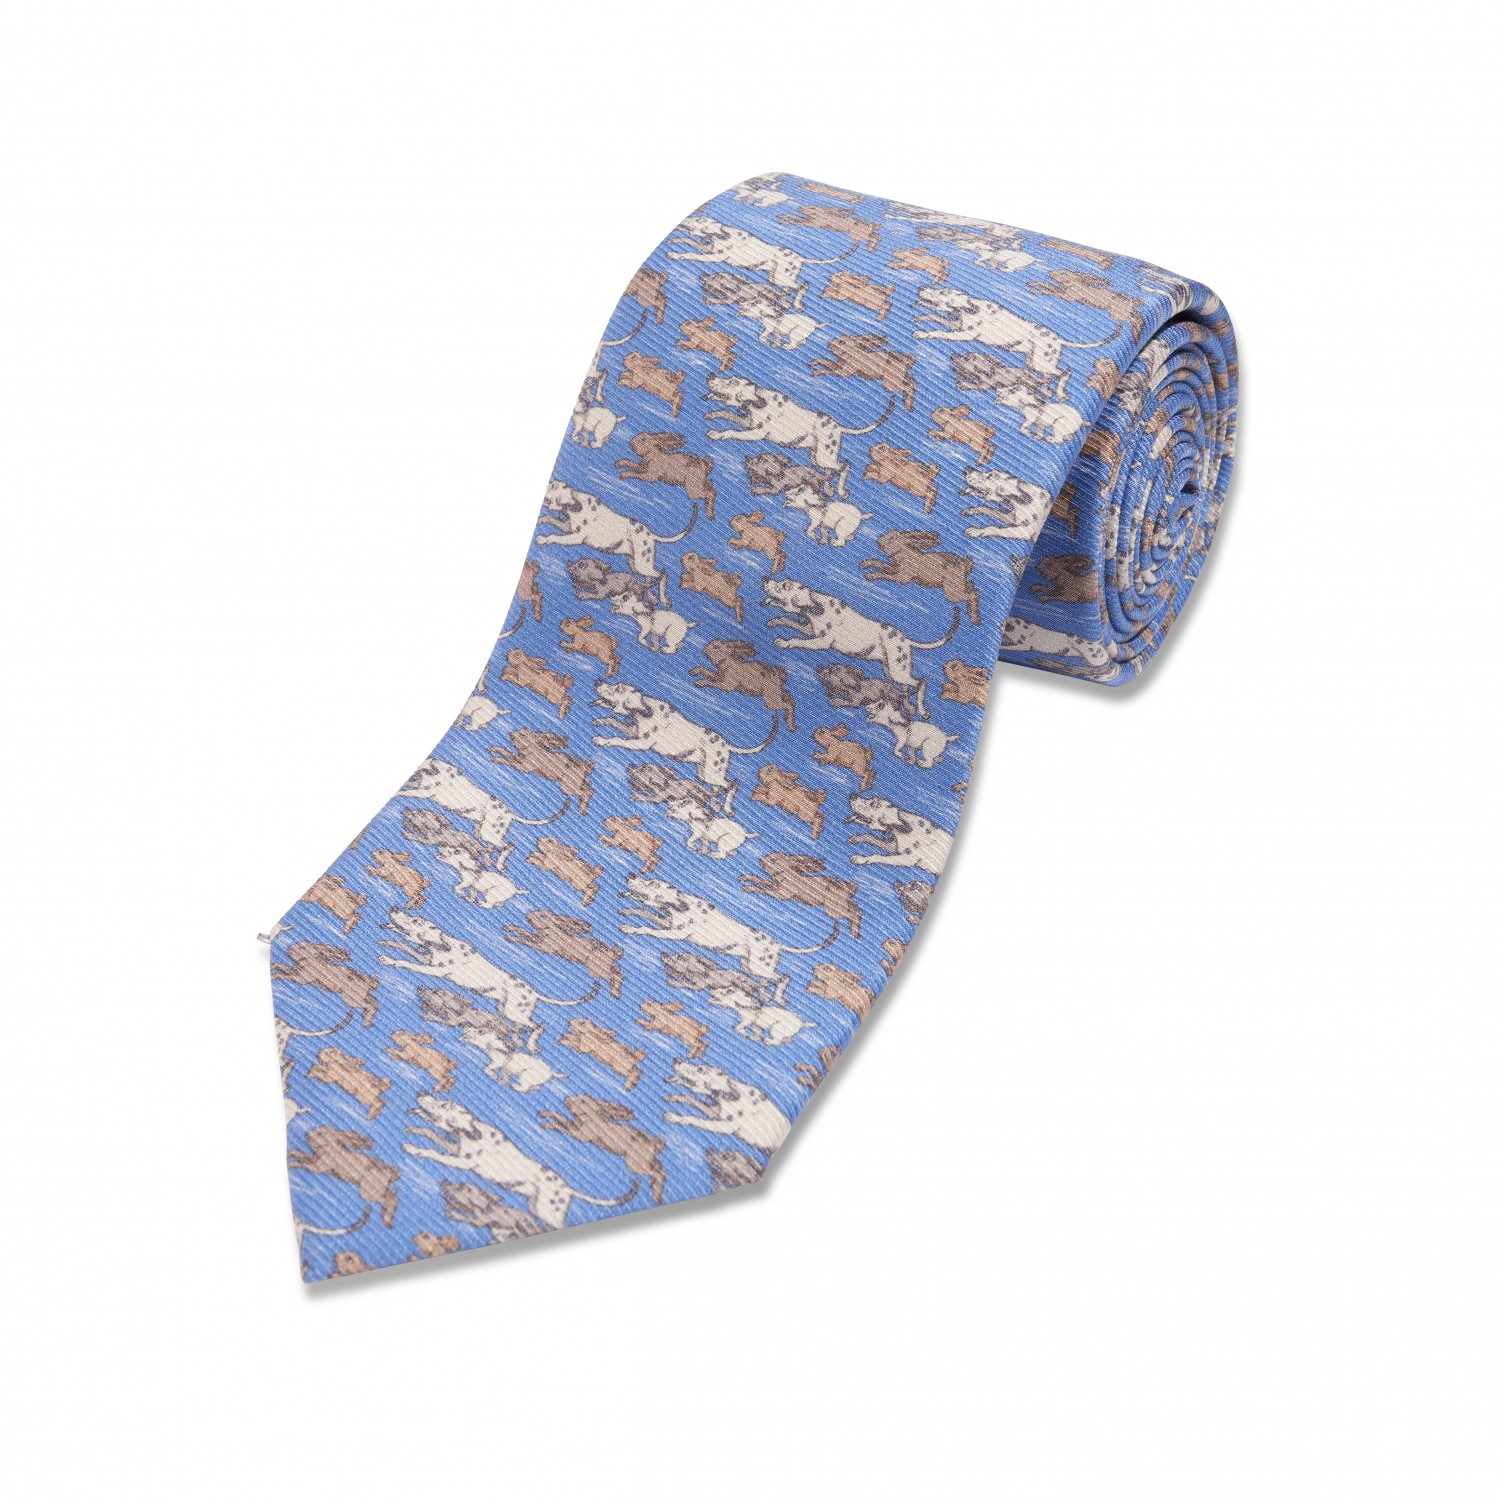 Blue w/ Tan & White Hounds Silk Necktie